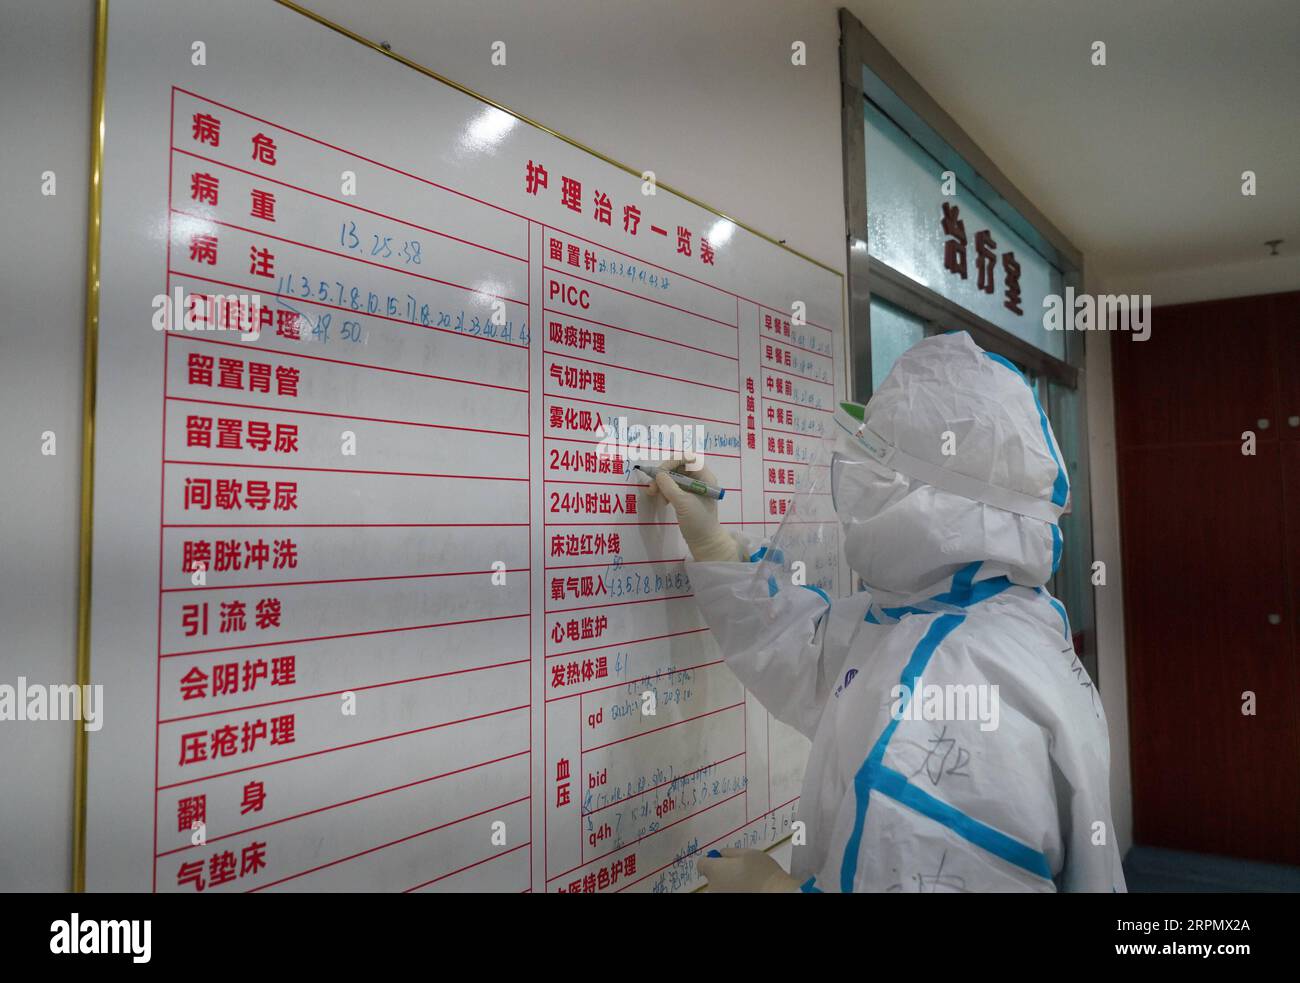 200218 -- NANCHANG, 18. Februar 2020 -- Ein medizinisches Personal zeichnet Behandlung und Pflegedetails in einer Isolationsstation des angeschlossenen Krankenhauses der Jiangxi Universität für traditionelle Chinesische Medizin in Nanchang, ostchinesische Provinz Jiangxi, 18. Februar 2020 auf. Während des Kampfes gegen das neuartige Coronavirus intensiviert das angeschlossene Krankenhaus der Jiangxi-Universität für traditionelle Chinesische Medizin die Bemühungen, die TCM-Behandlung der Patienten, die mit dem neuartigen Coronavirus infiziert sind, voranzutreiben. Die westliche Medizin bietet wichtige lebenserhaltende Maßnahmen wie Atemwegserkrankungen und Zirkus Stockfoto